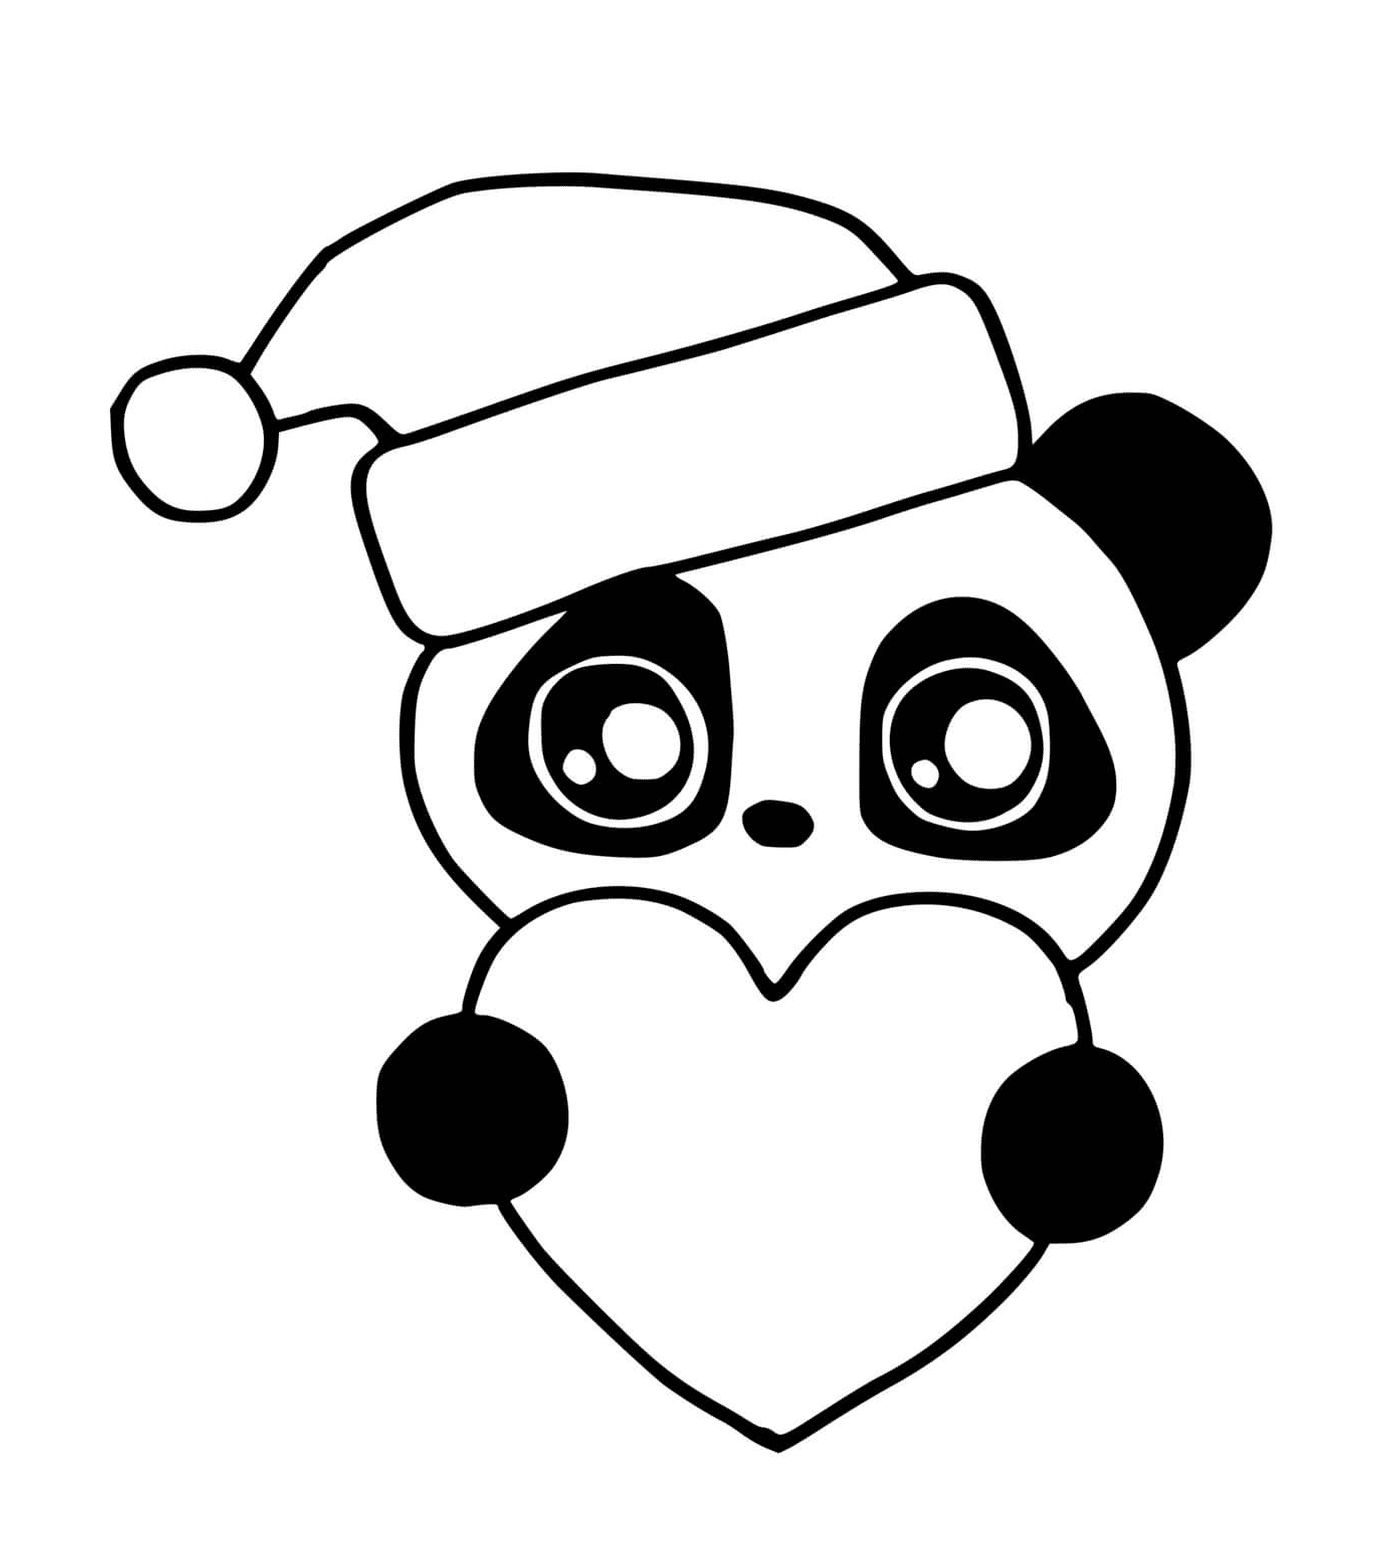  एक प्यारा पांडा क्रिसमस की टोपी पहने हुए 